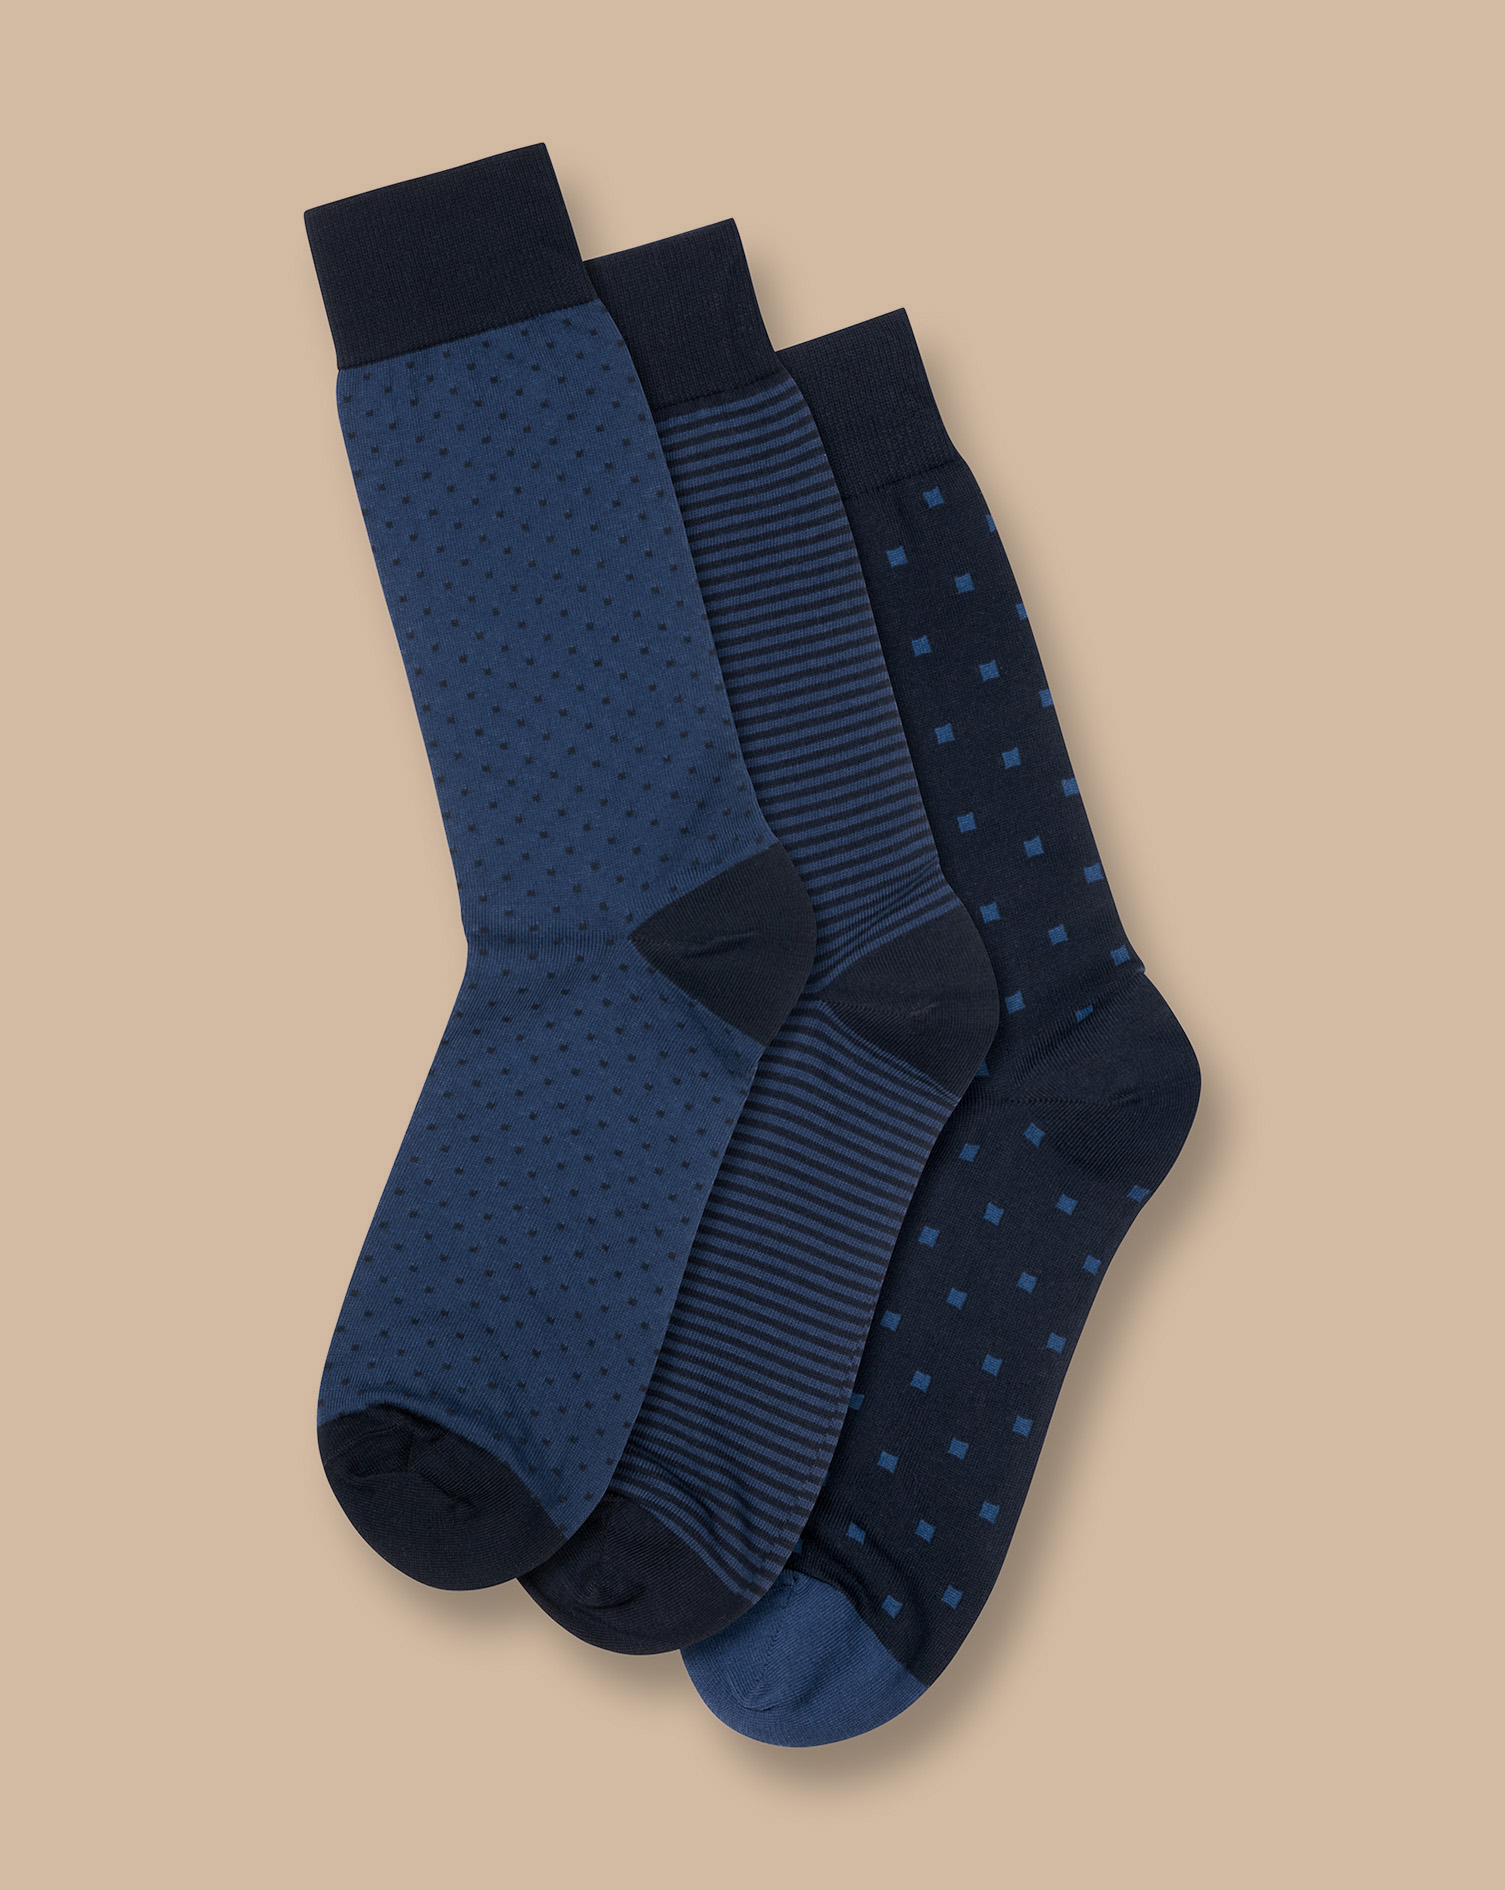 Men's Charles Tyrwhitt Patterned Rich 3 Pack Socks - Navy Multi Blue Size 6-10 Cotton
